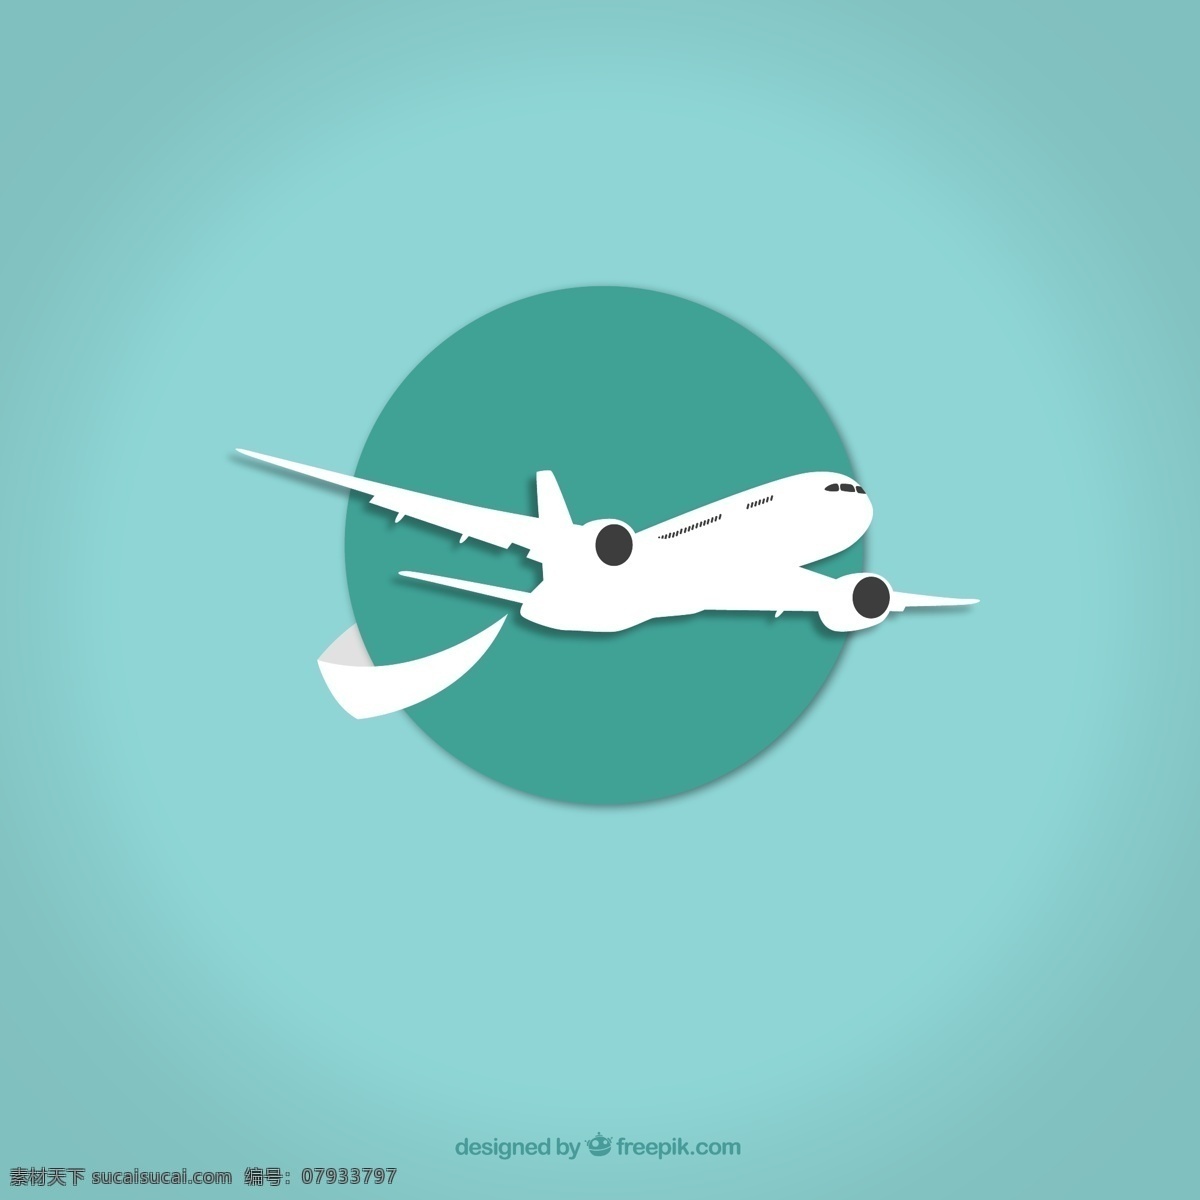 飞机 飞机素材 小飞机 客机 飞机图案 飞机图片库 民航机 飞机模型 民航 航空 机场 降落 平面素材